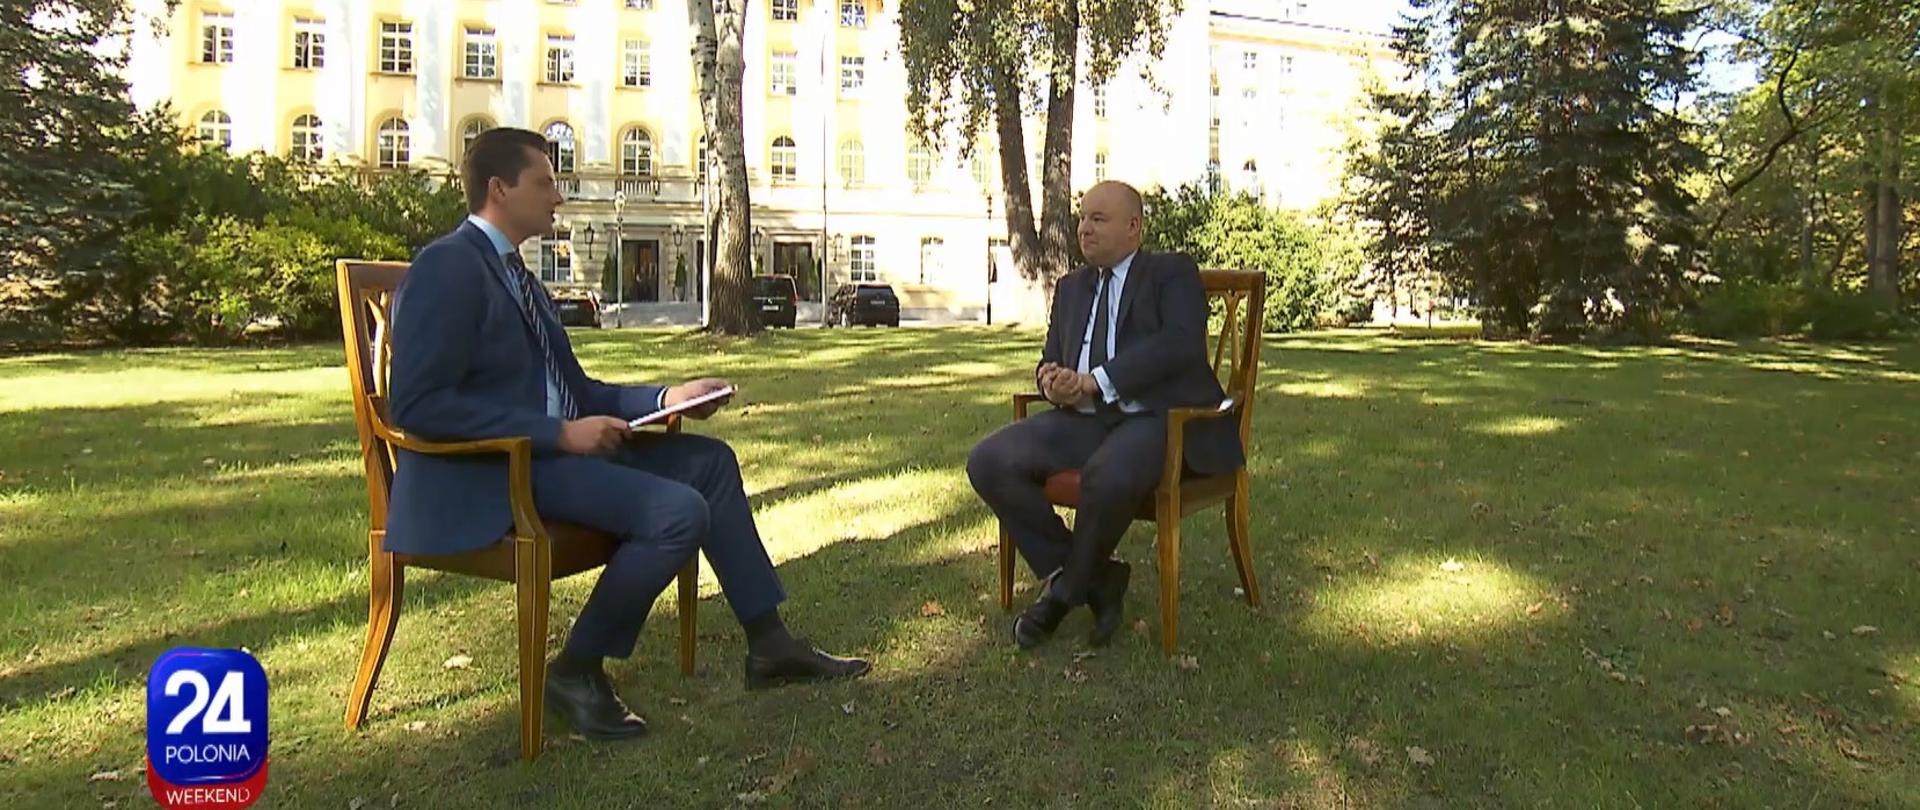 Minister Jan Dziedziczak podczas udzielania wywiadu dla Polonia 24 -weekend ,w ogrodach KPRM.